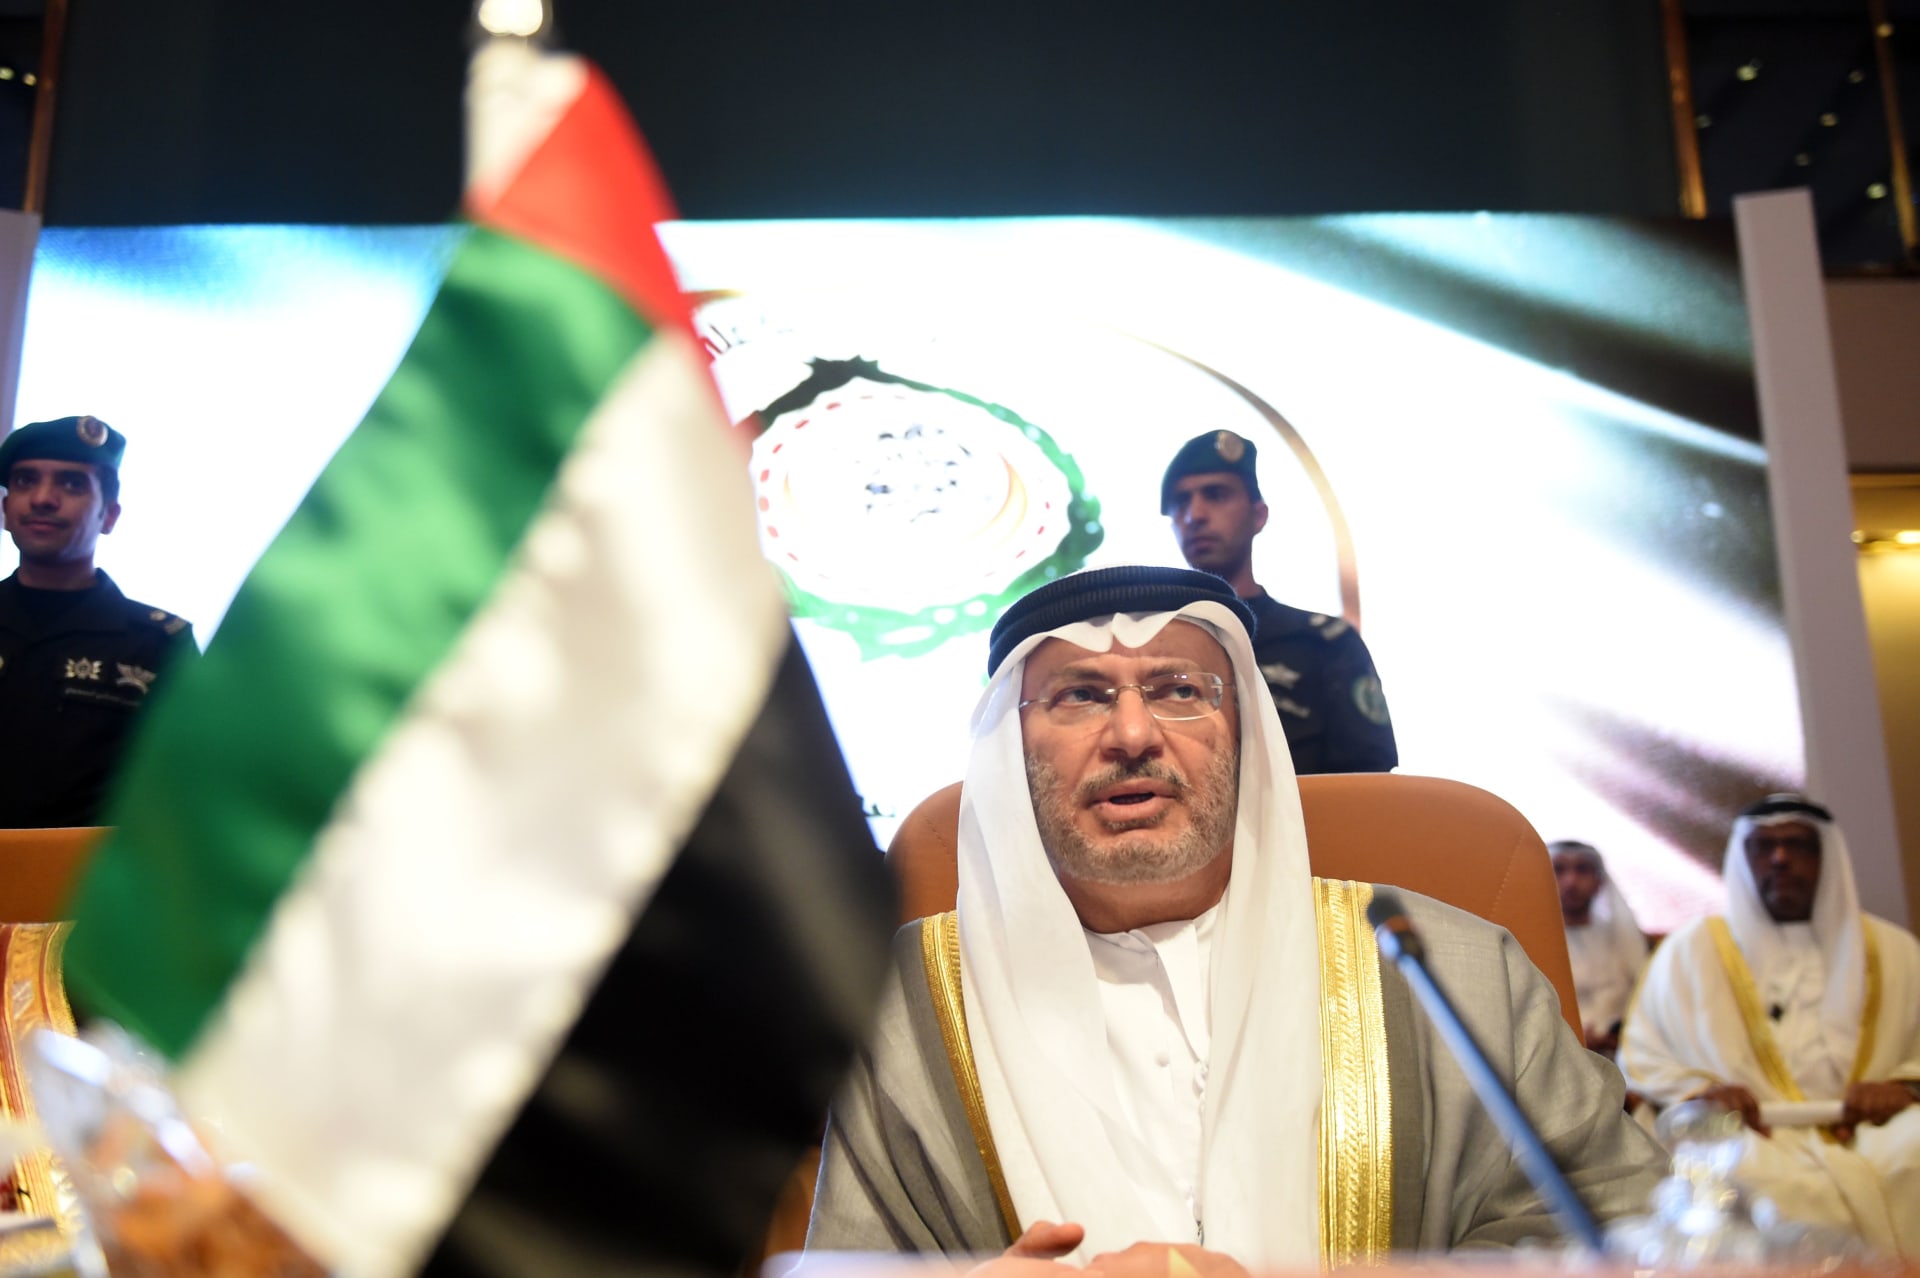 قرقاش يُعلق على انضمام الإمارات إلى "بريكس": يُثبت قوة اقتصادنا وفعالية دبلوماسيتنا